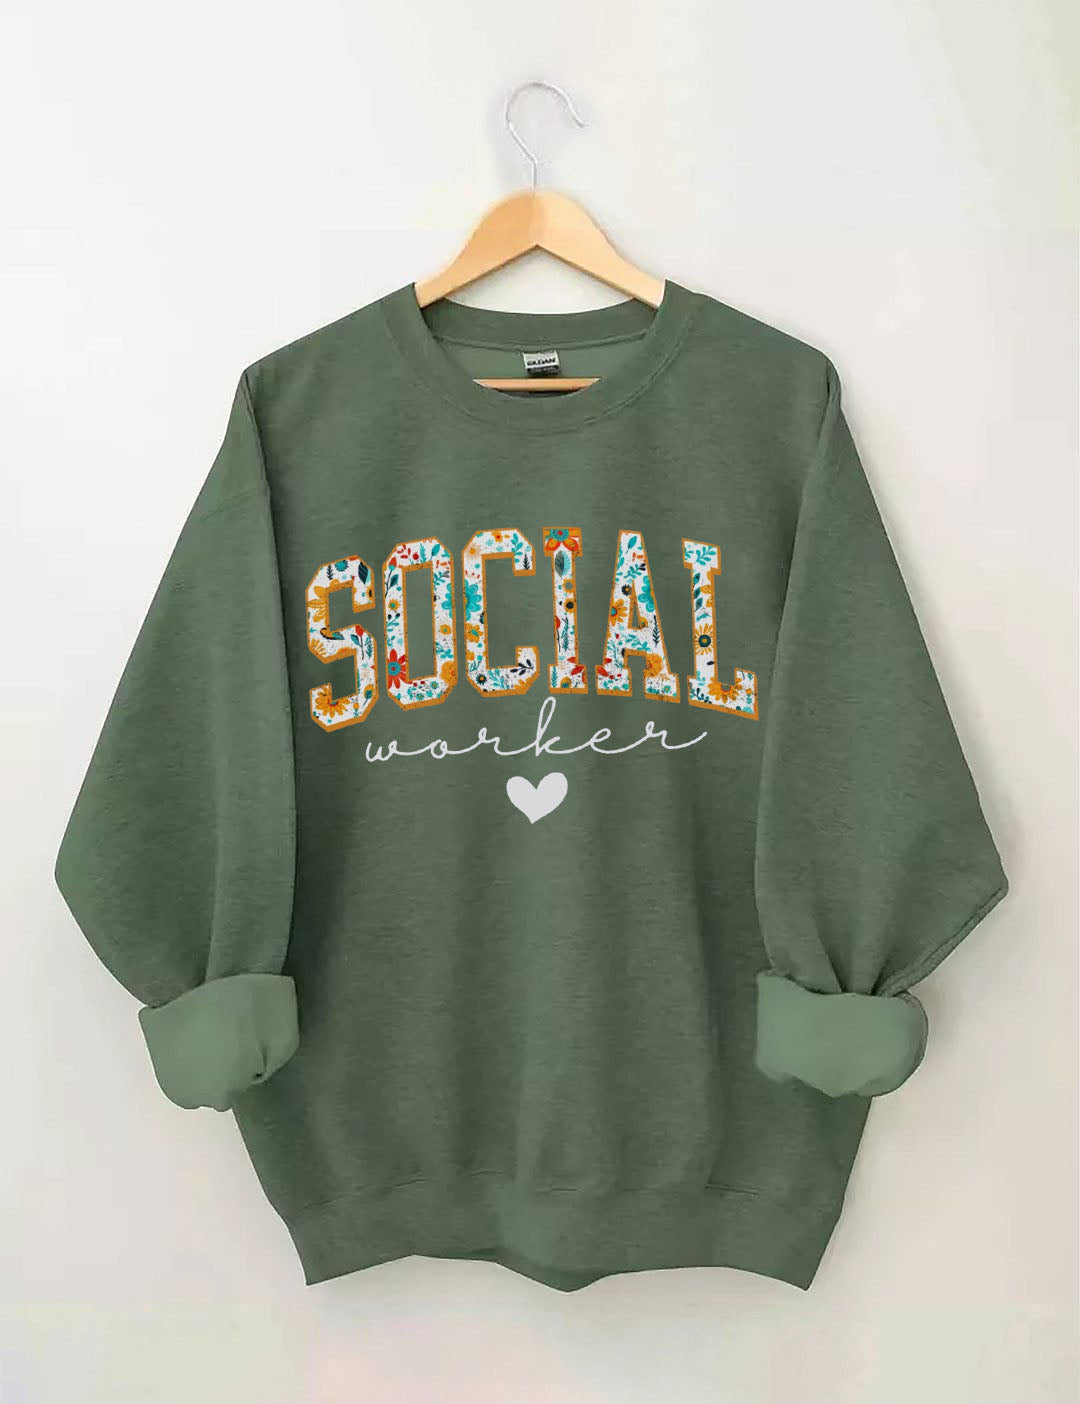 Floral Social Worker Sweatshirt